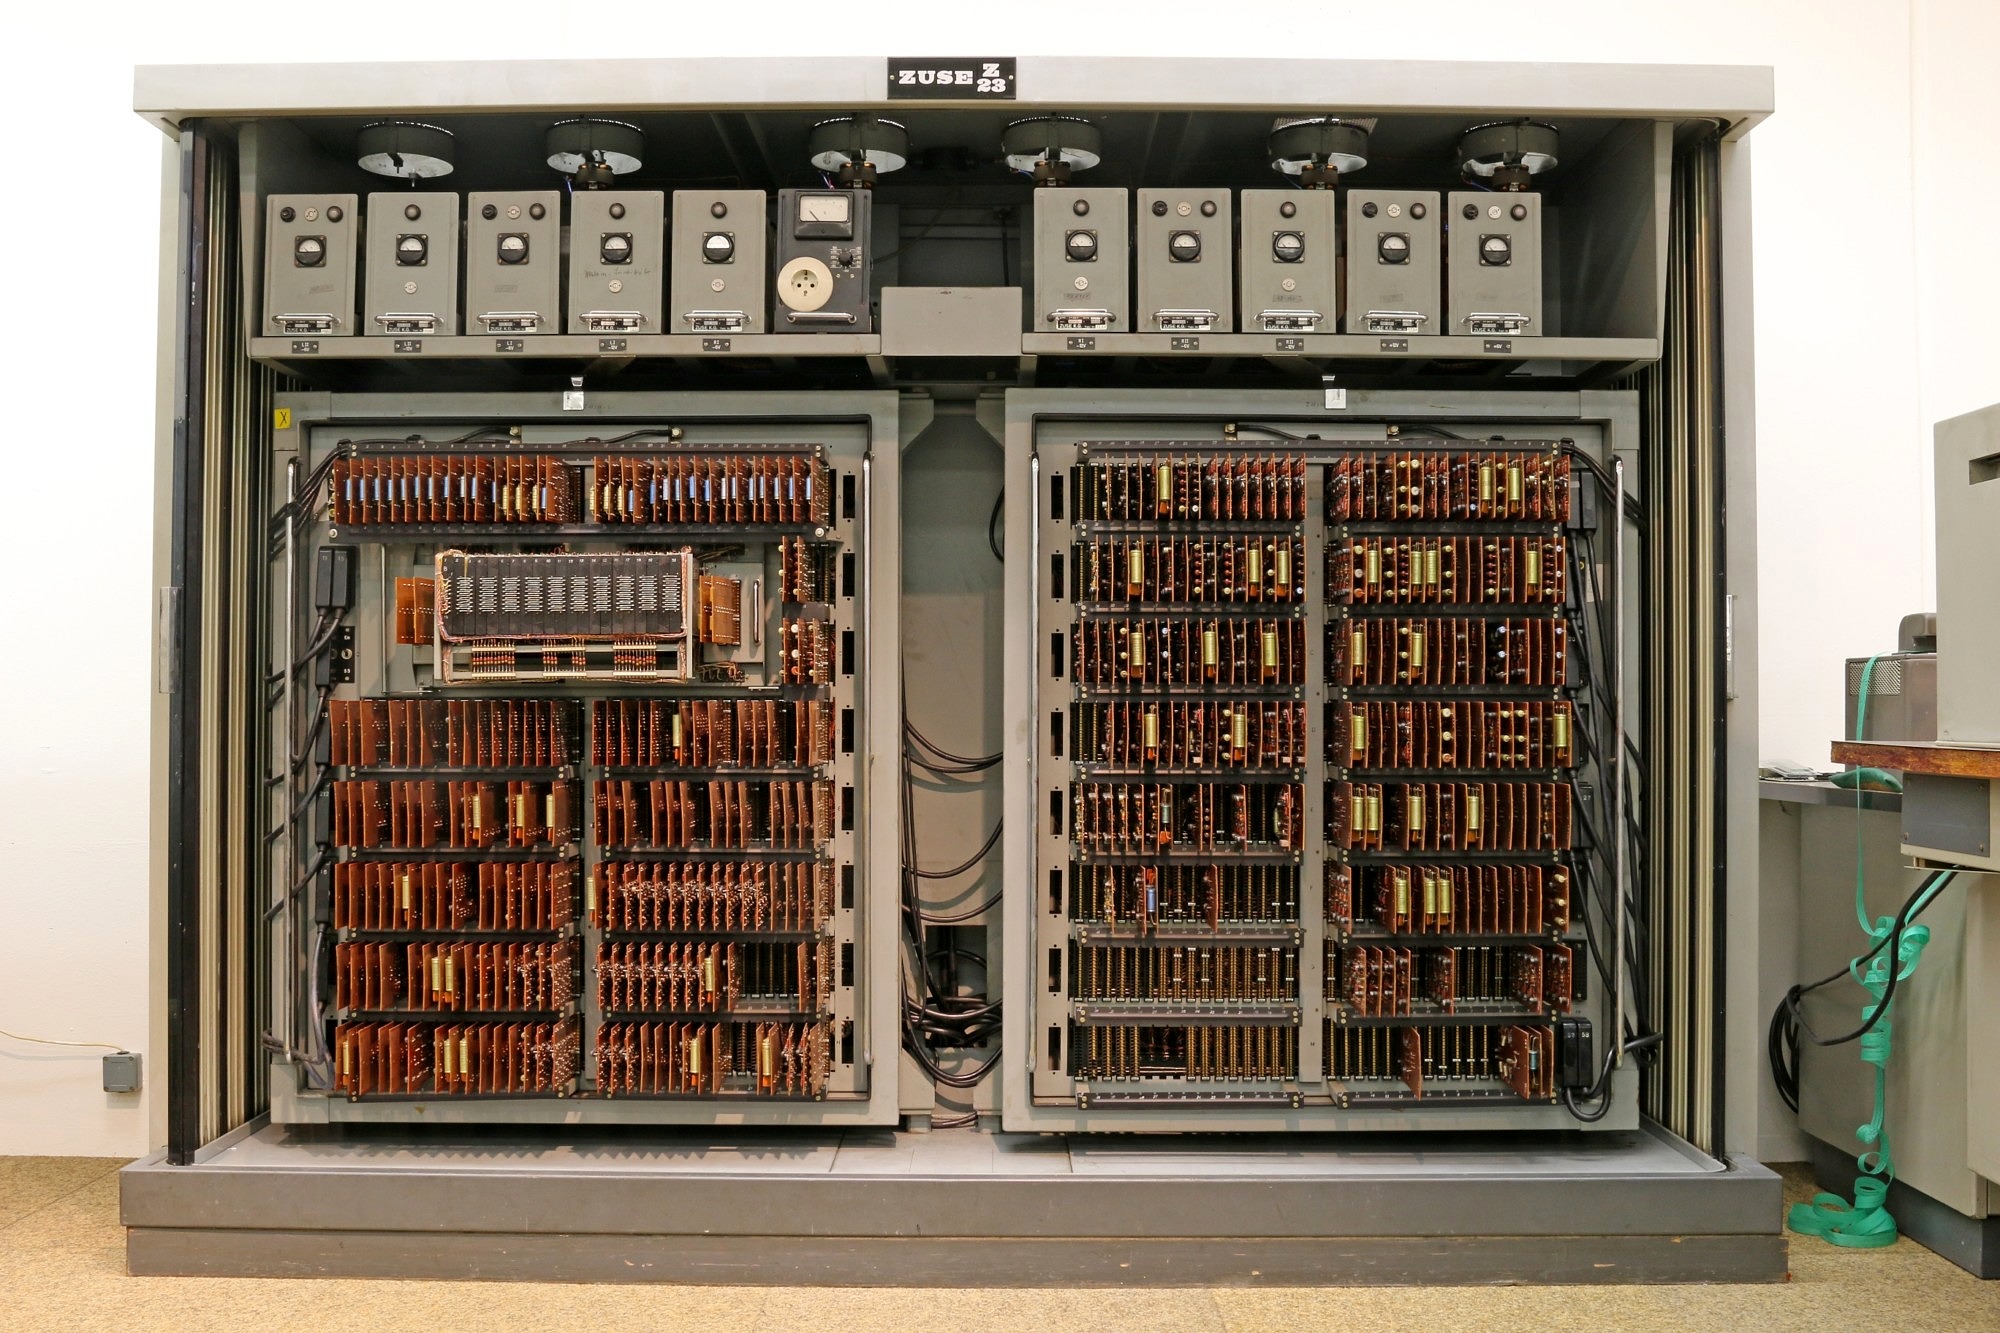 Das im wahrsten Sinne des Wortes größte Stück der Sammlung ist die Zuse Z23, die erste elektronische Rechenanlage der Zuse KG in Transistortechnik. Sie wurde 1962 angeschafft und war damit die erste elektronische Rechenanlage an der Universität Erlangen-Nürnberg.